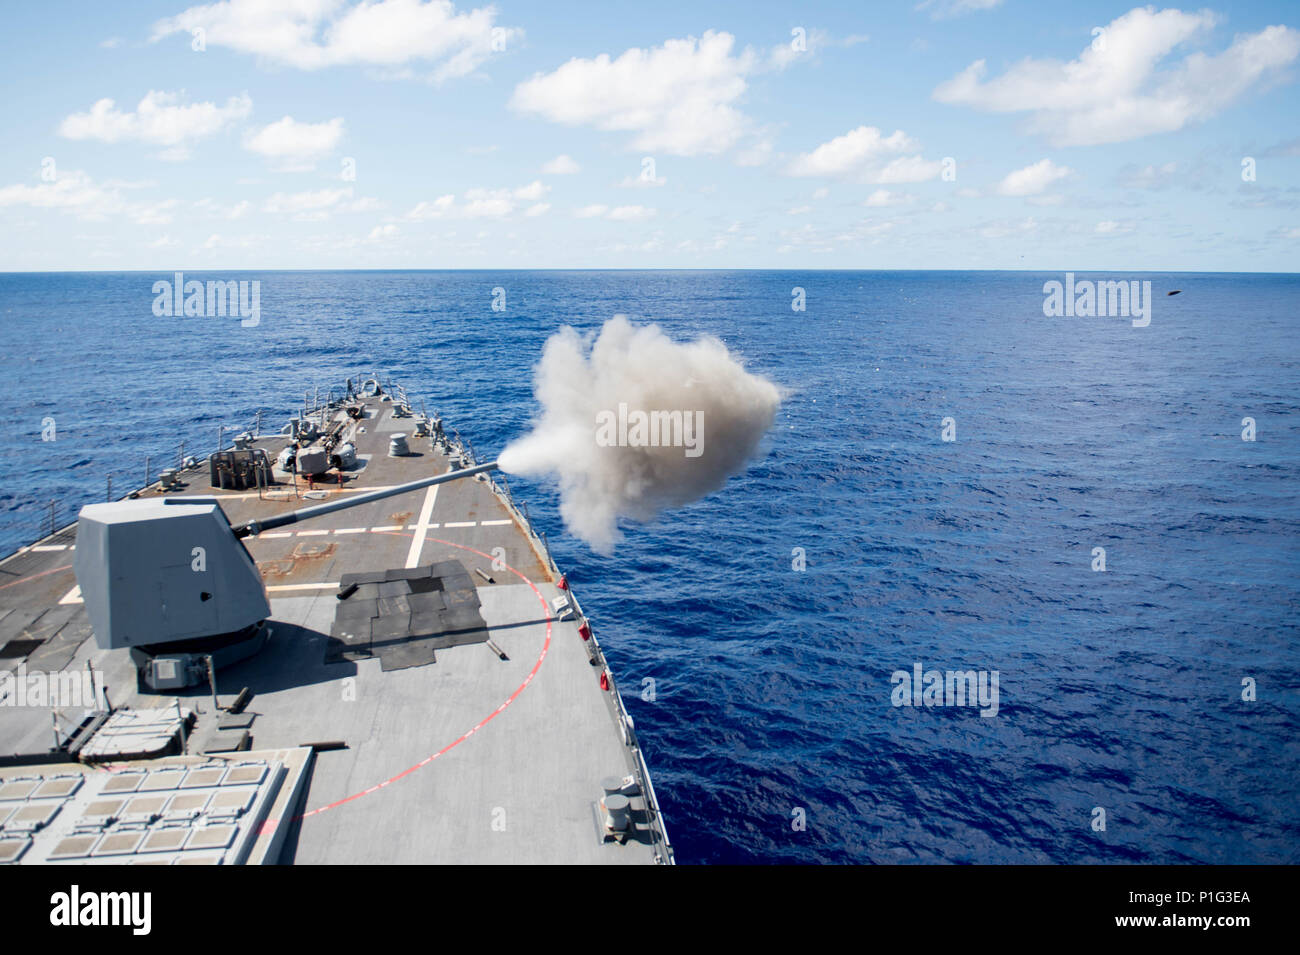 161026-N-NT265-405 Mare delle Filippine (ott. 26, 2016) La distribuita Arleigh Burke-class guidato-missile destroyer USS McCampbell (DDG 85), incendi il suo MK45 da 5 pollici pistola durante un live-fire esercitazione. McCampbell è di pattuglia con un Carrier Strike gruppo cinque (CSG 5) di supporto di sicurezza e stabilità nella Indo-Asia-regione del Pacifico. (U.S. Navy foto di Sottufficiali di seconda classe Senyk cristiana/rilasciato) Foto Stock